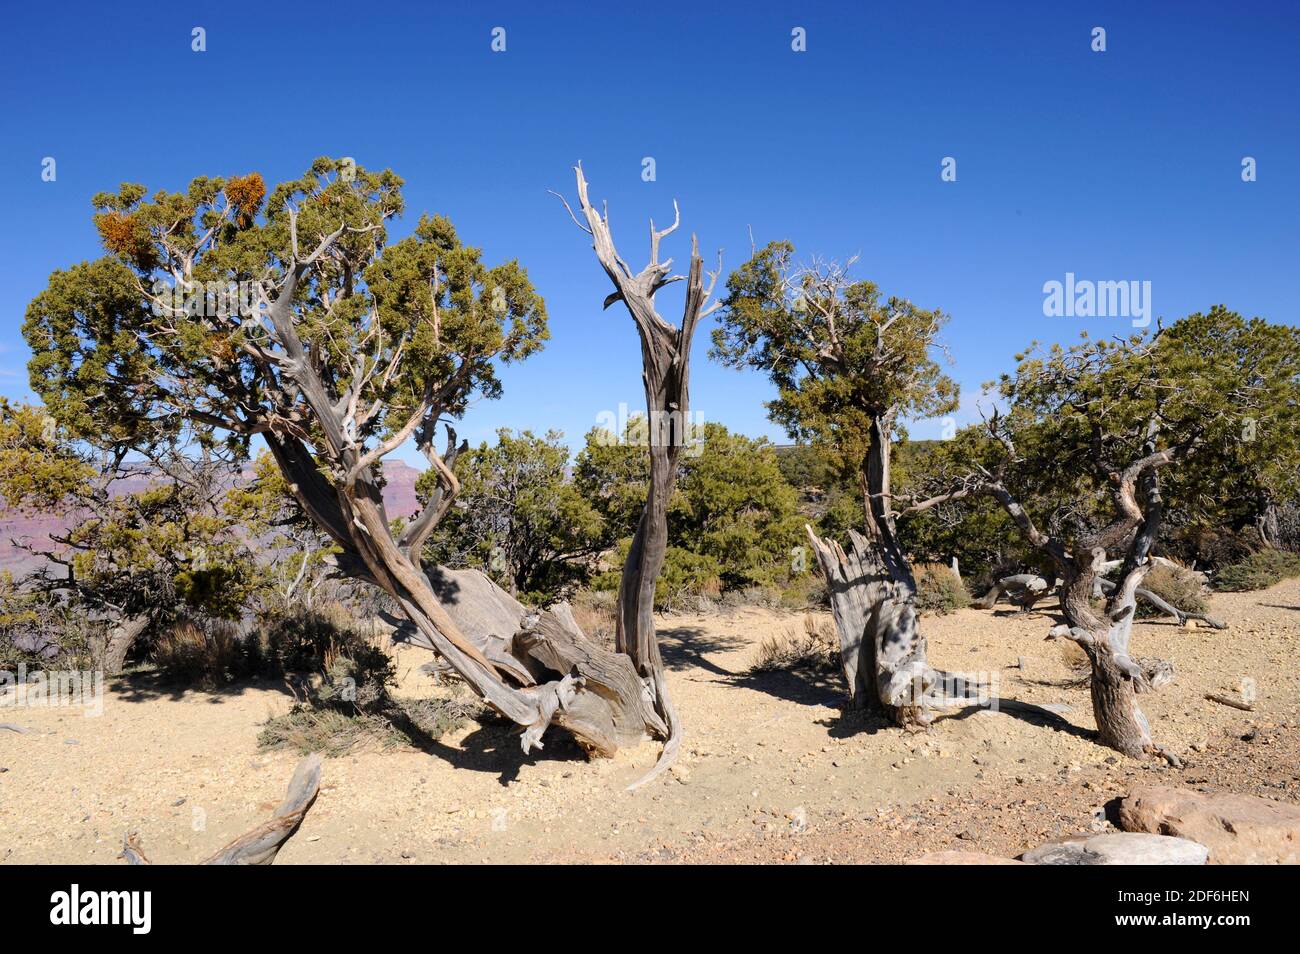 El enebro de Utah (Juniperus osteosperma) es un arbusto o árbol pequeño nativo del suroeste de EE.UU. Espécimen afectado por enebro enano muérdago (Arceuthobium Foto de stock